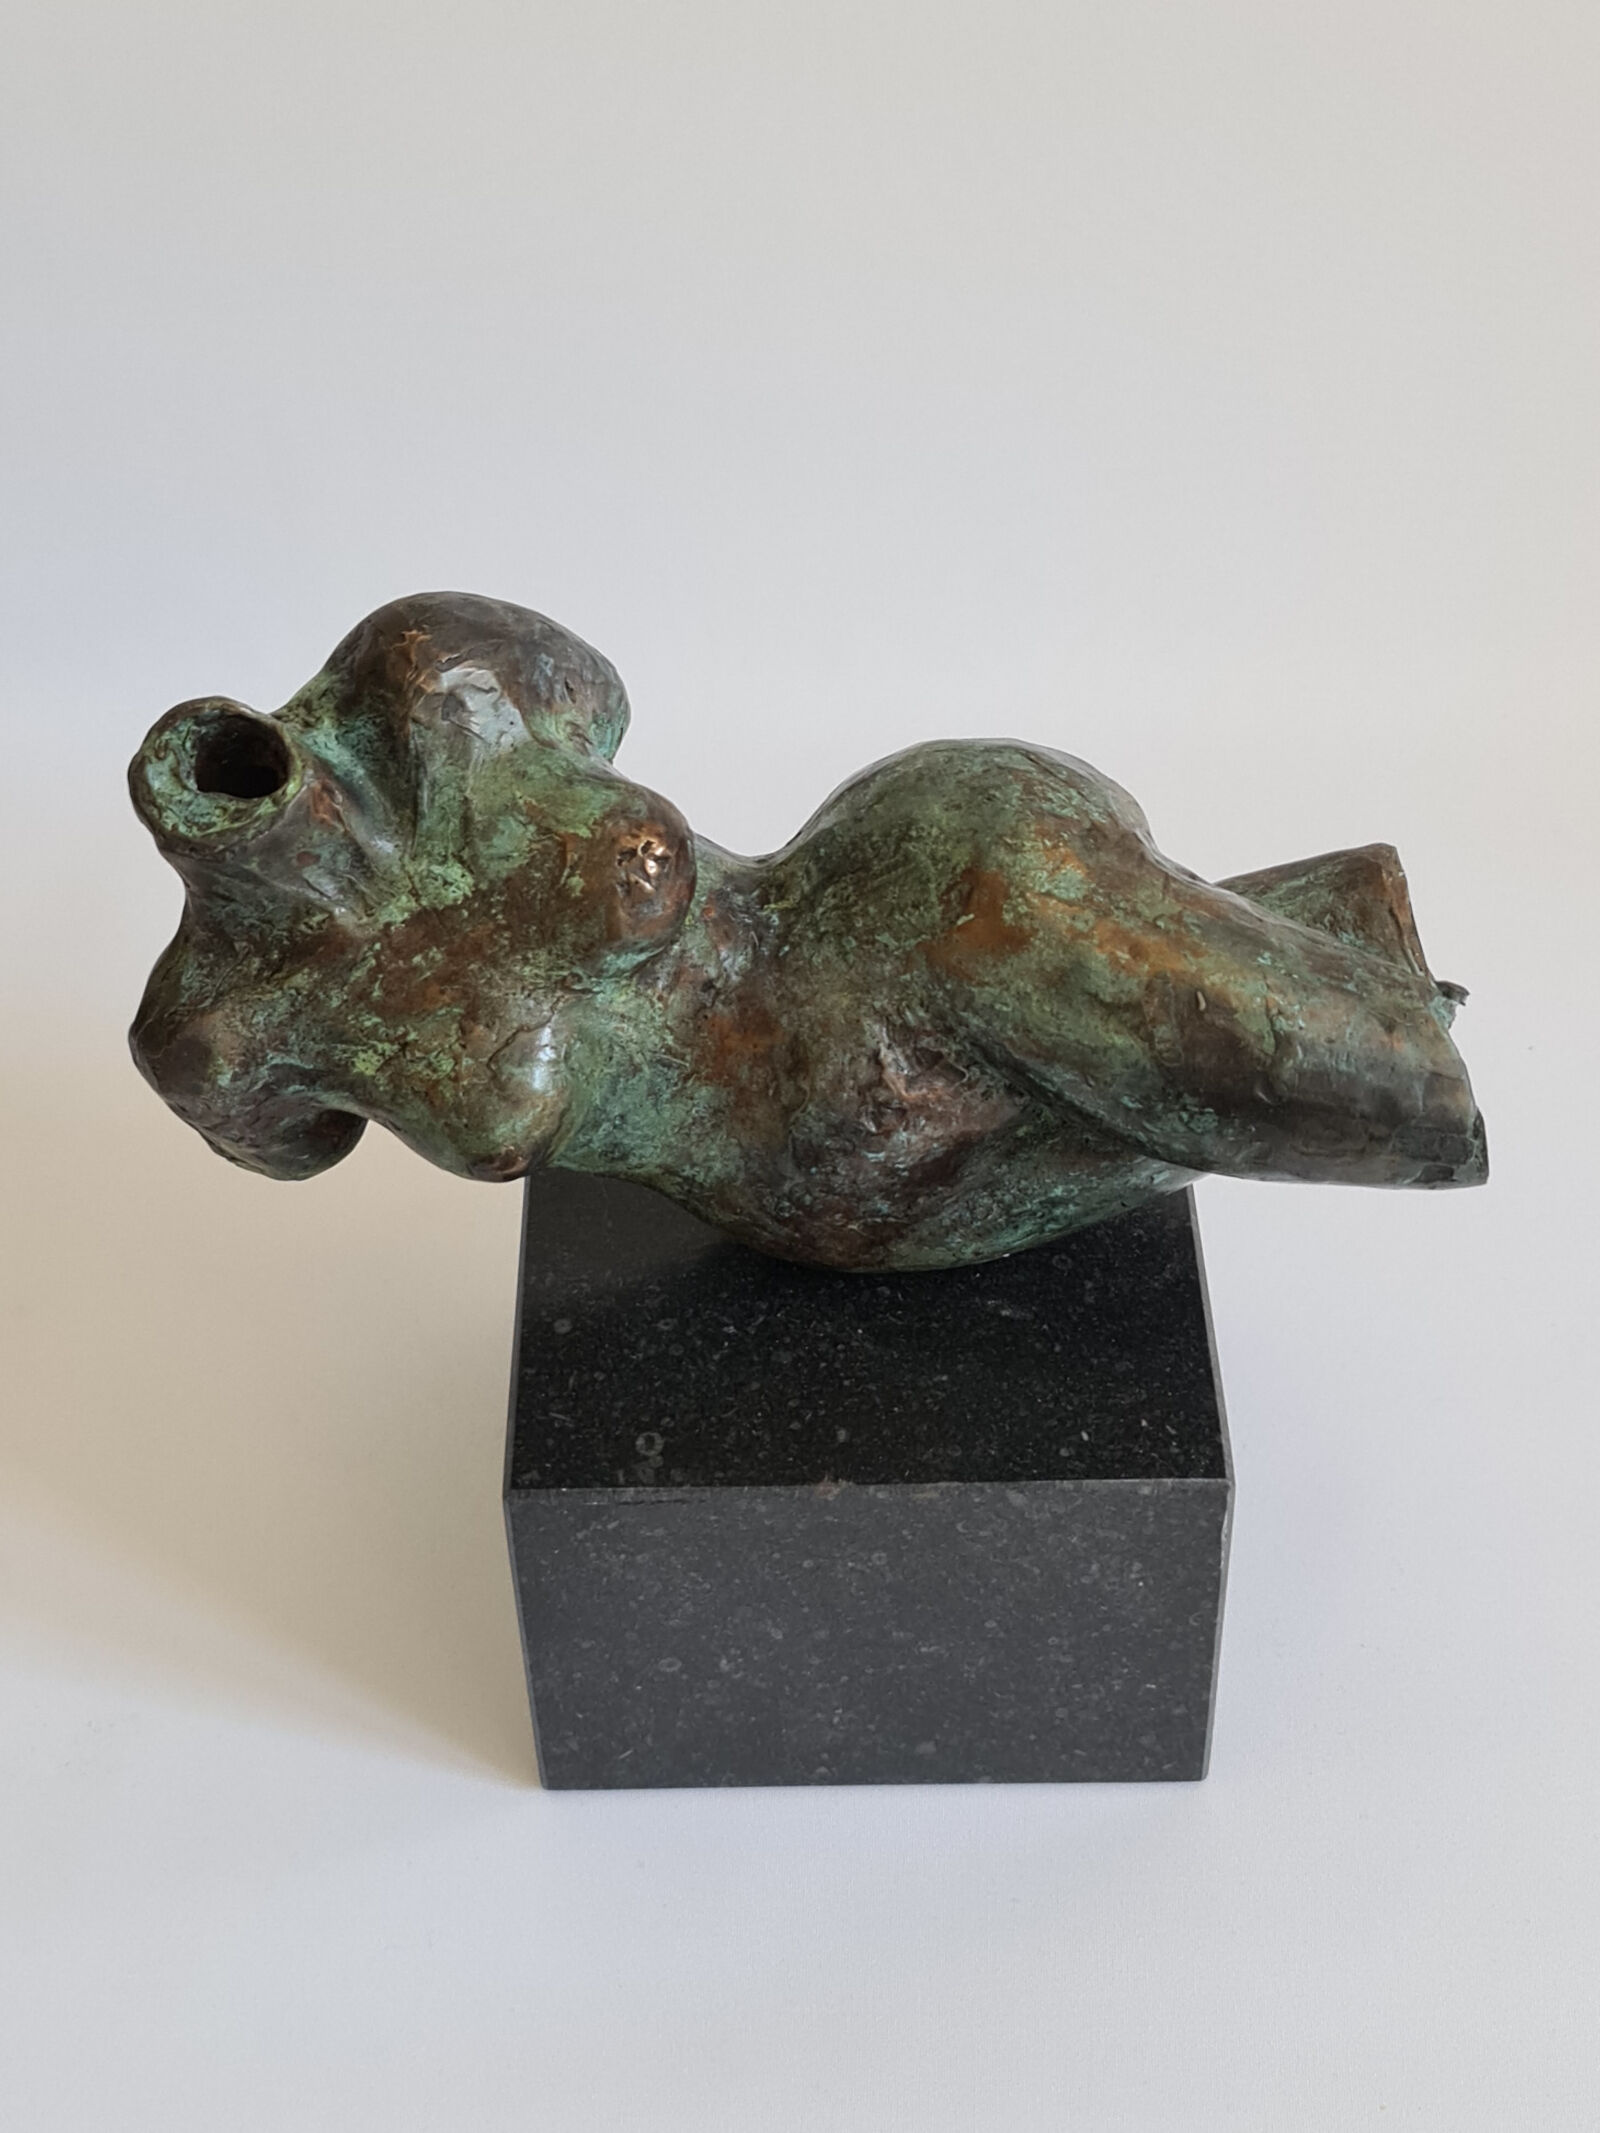 Sculpture "Lying torso" (2021)